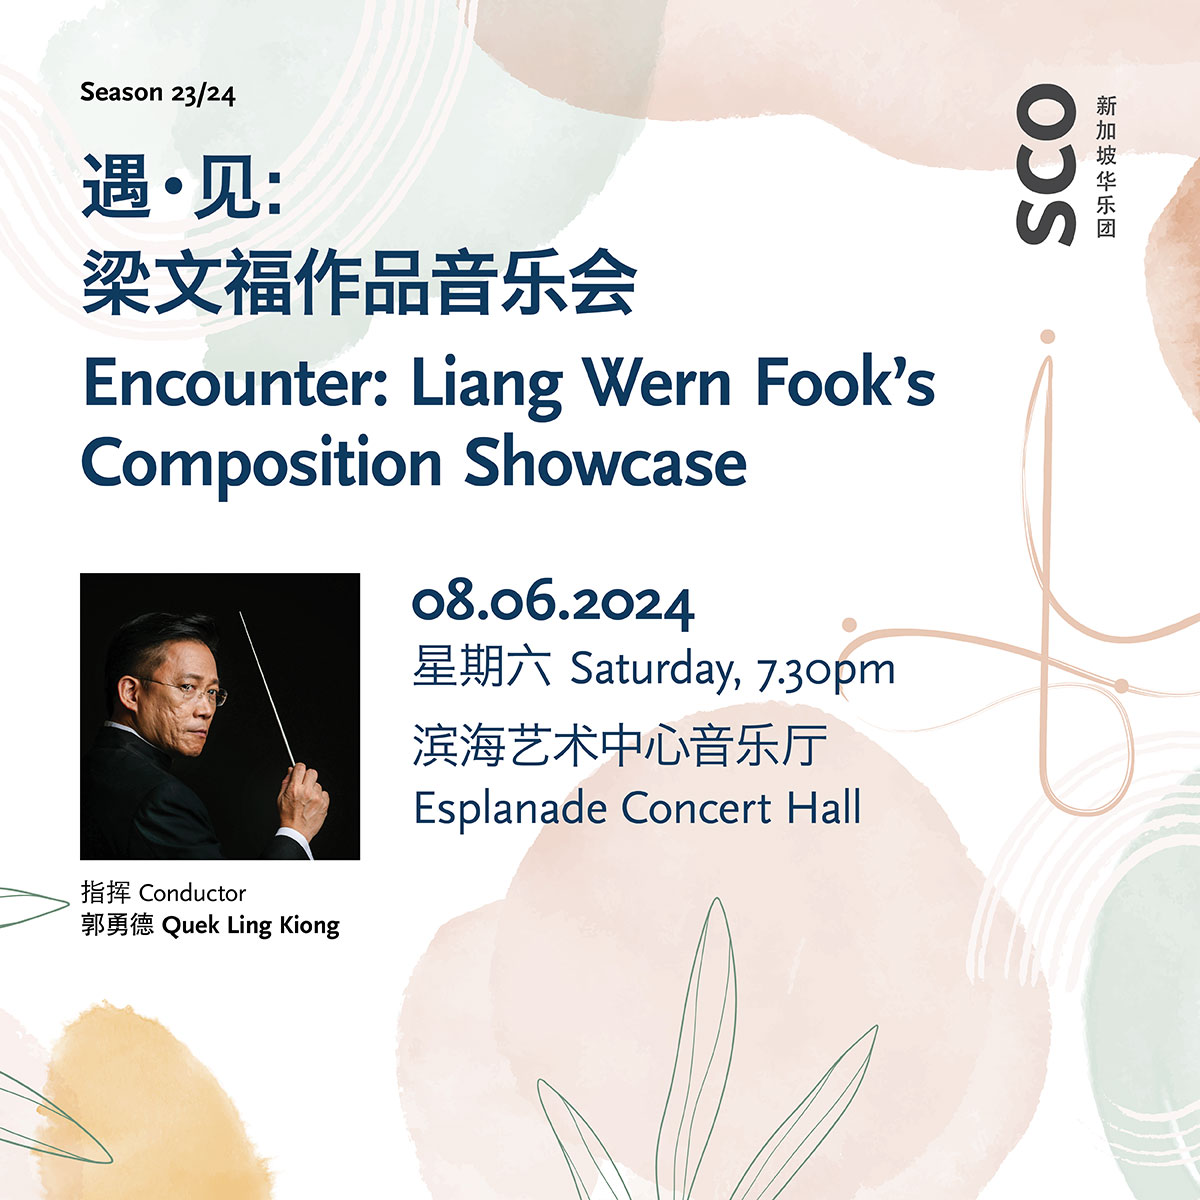 Encounter: Liang Wern Fook’s Composition Showcase